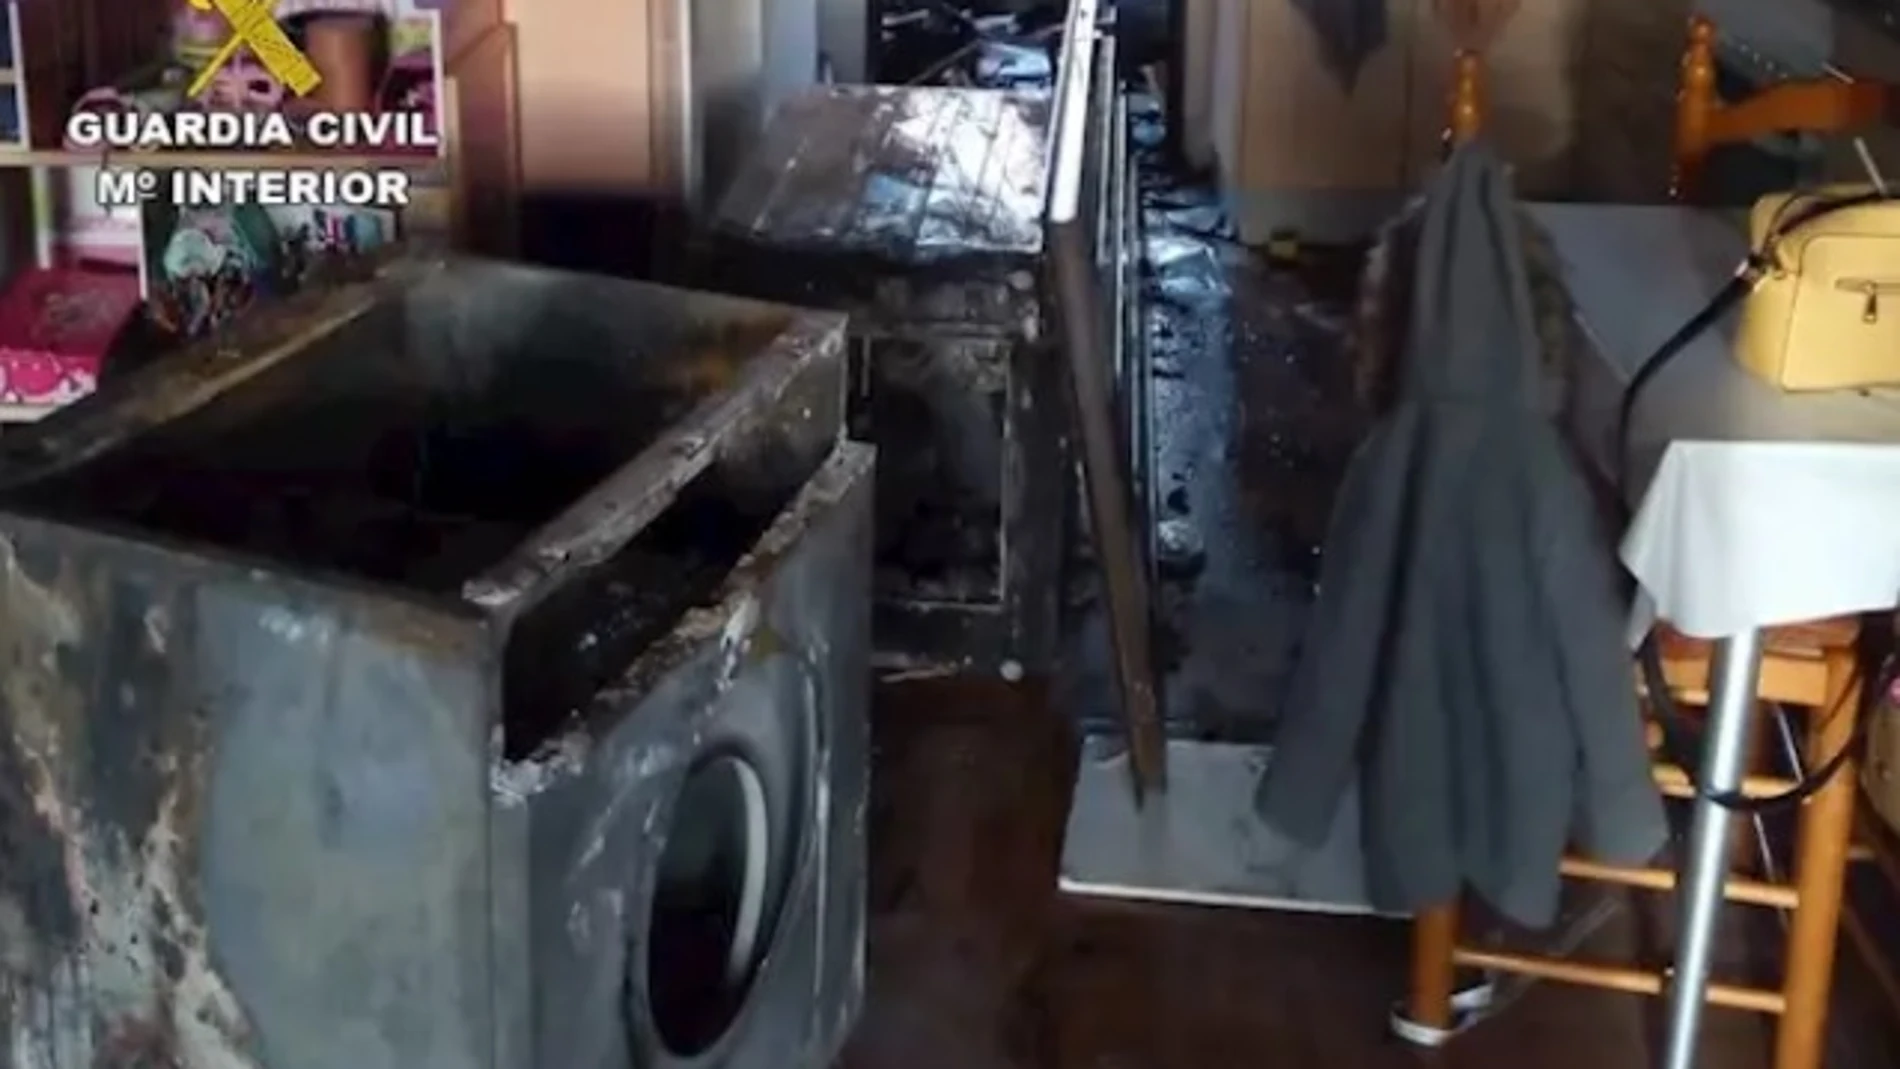 Situación en la que quedó la cocina tras el incendio